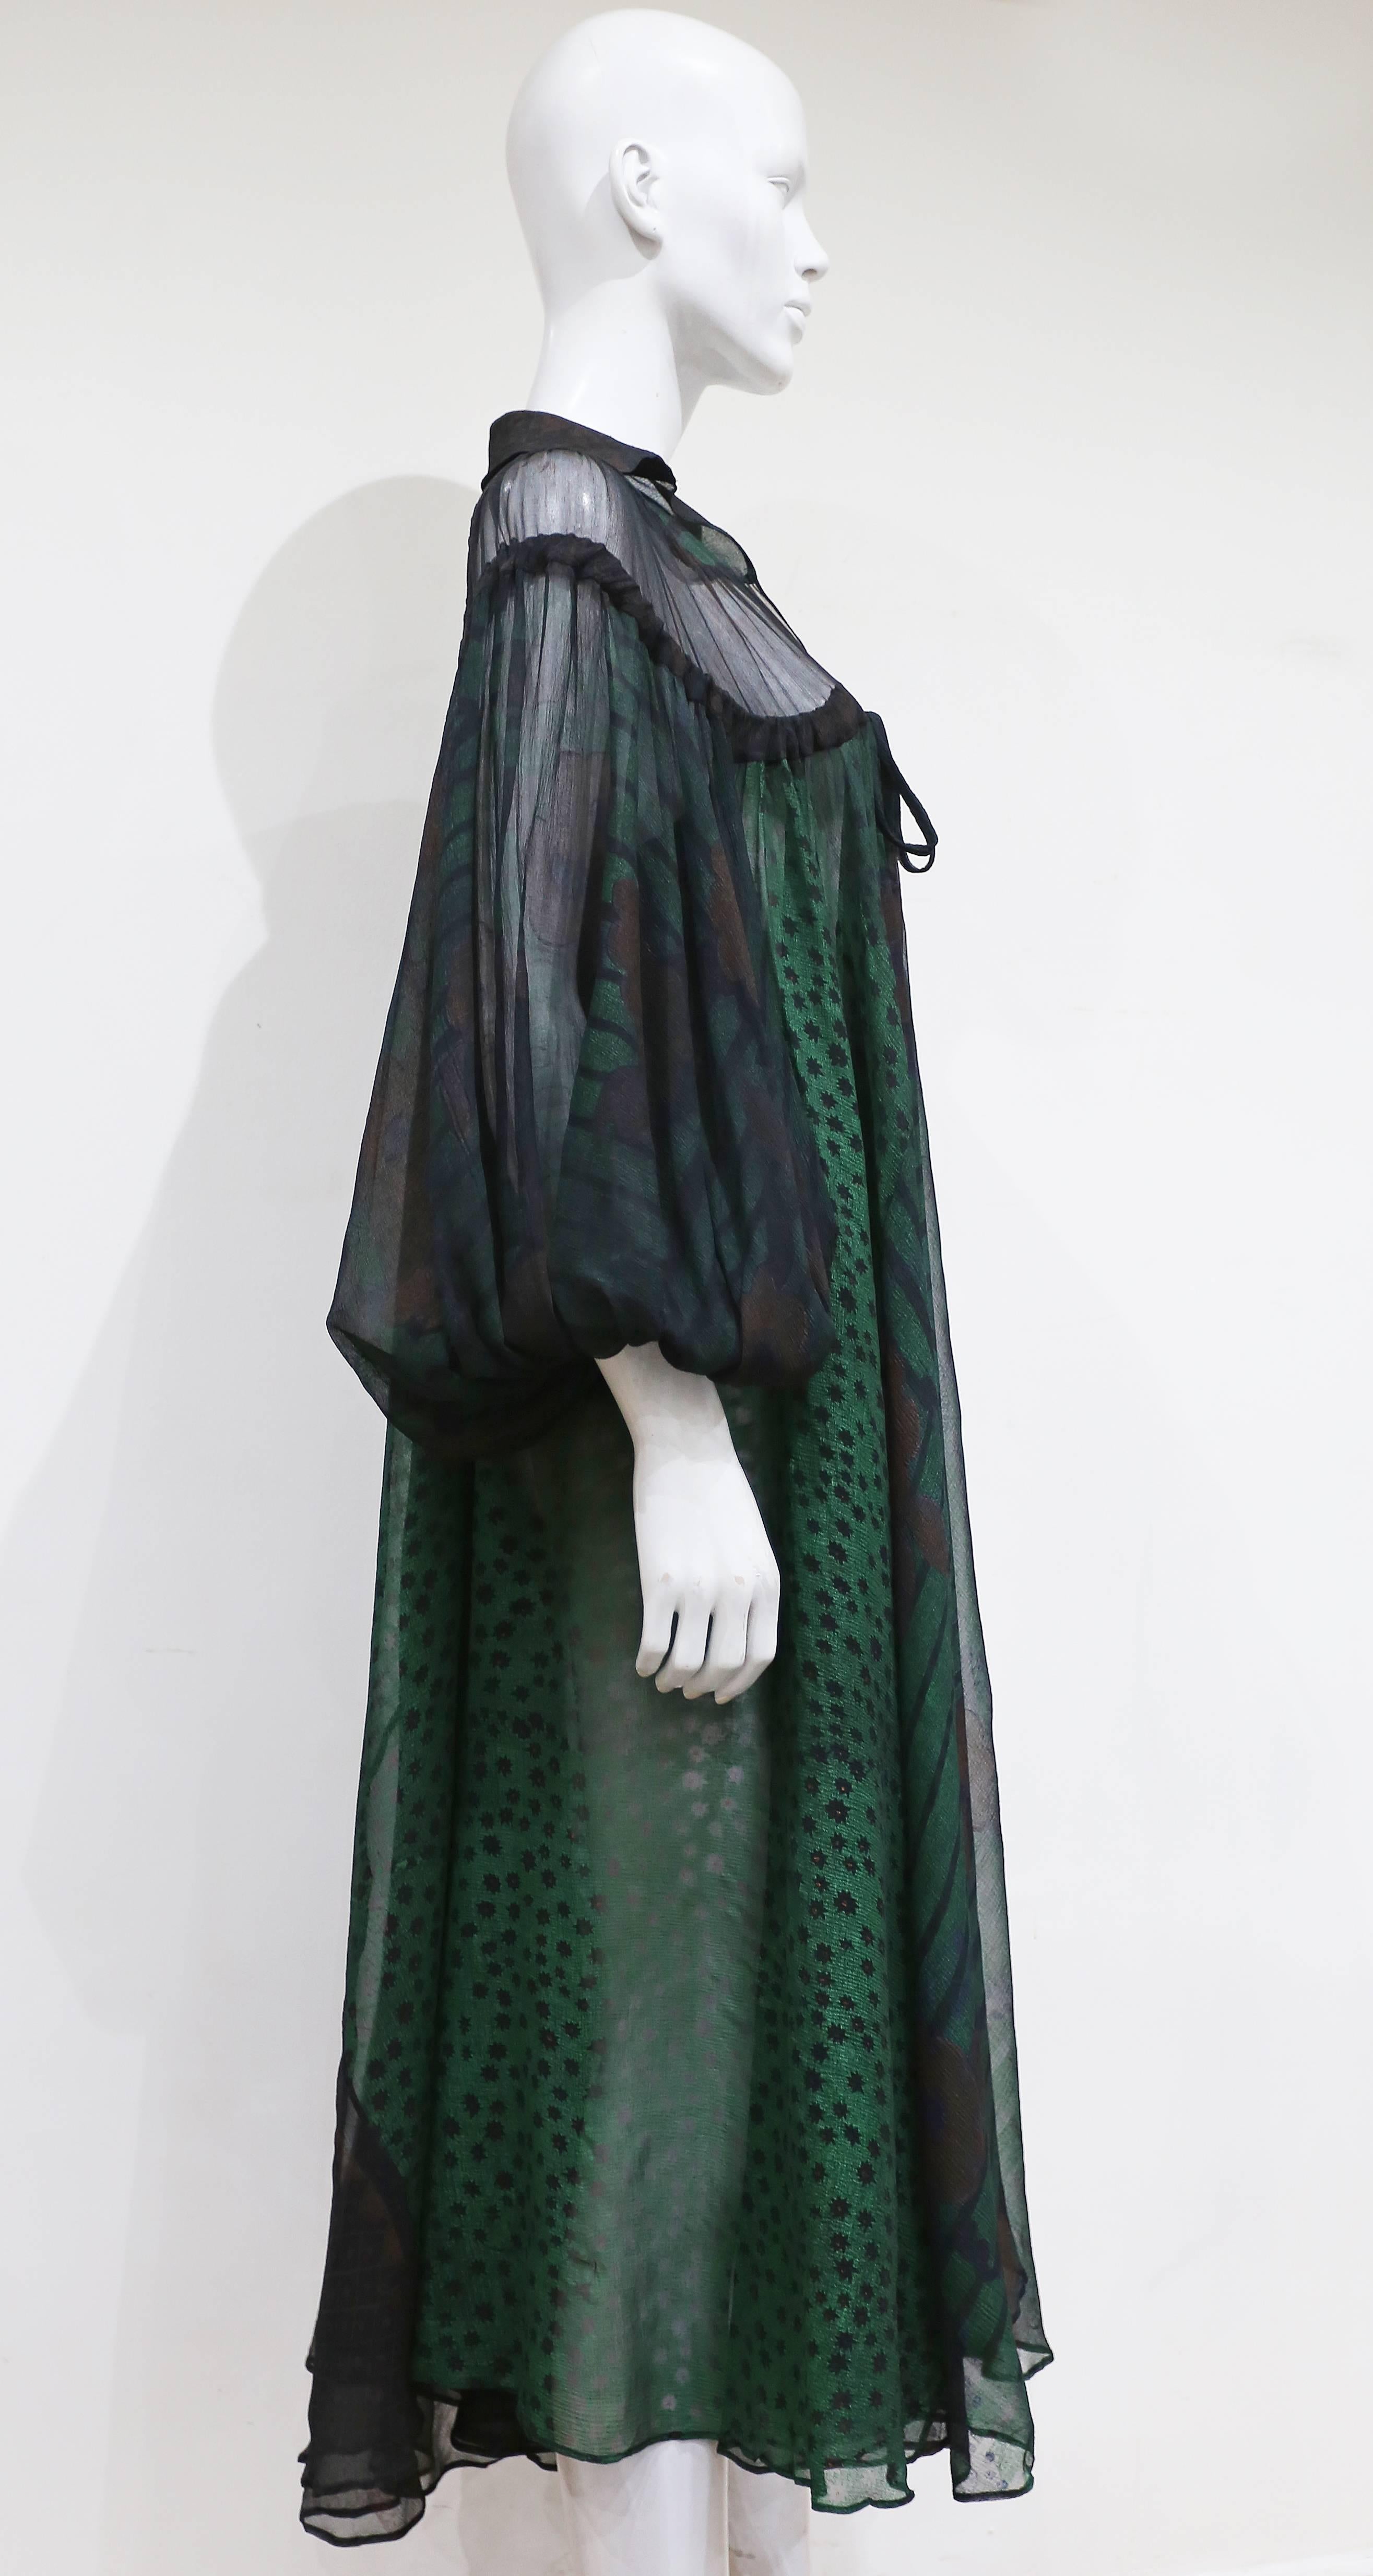 Black Ossie Clark extraordinary chiffon dress with Celia Birtwell print, c. 1968 - 69